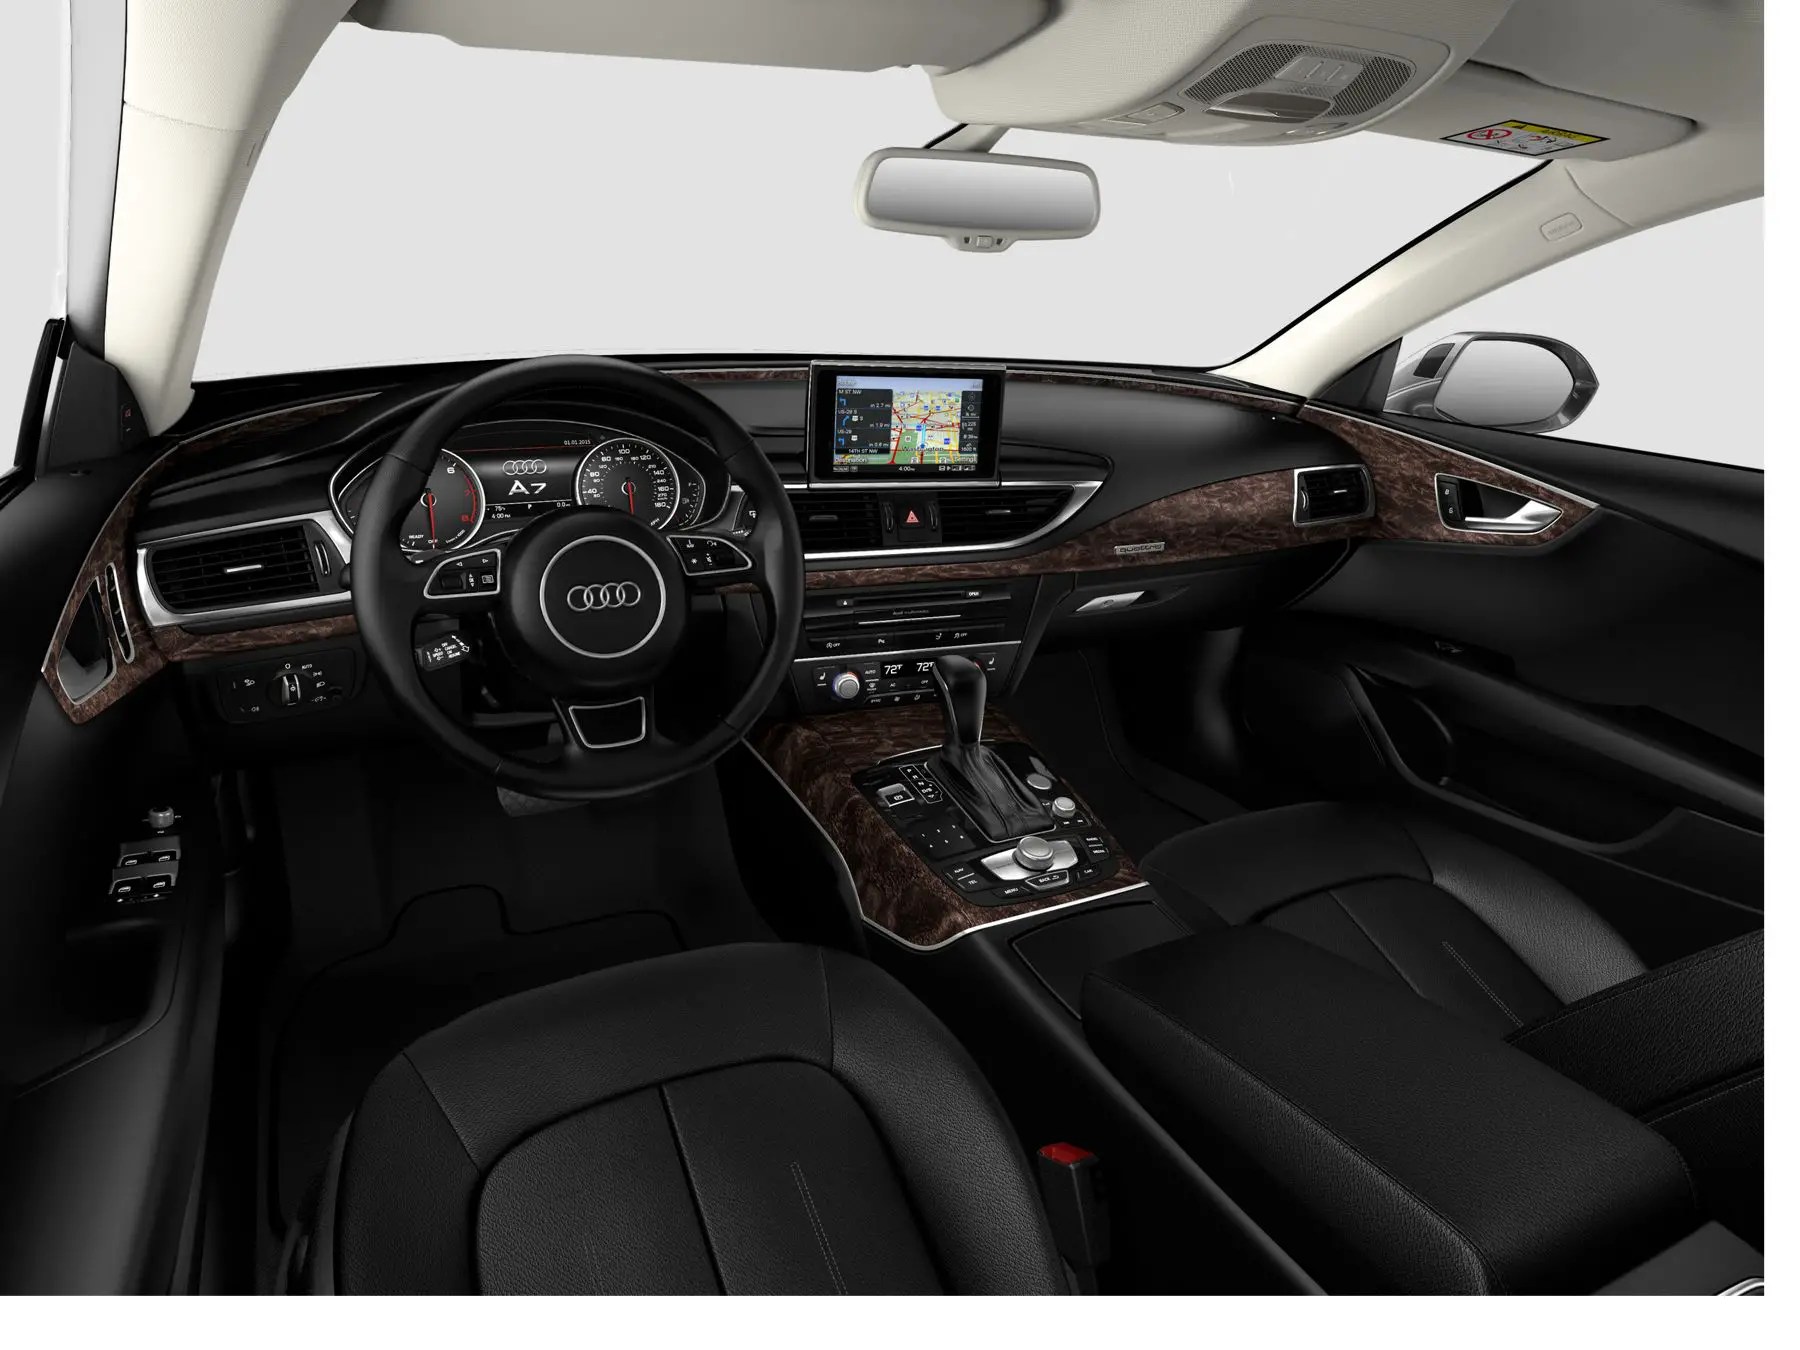 Audi A7 Prestige interior front view